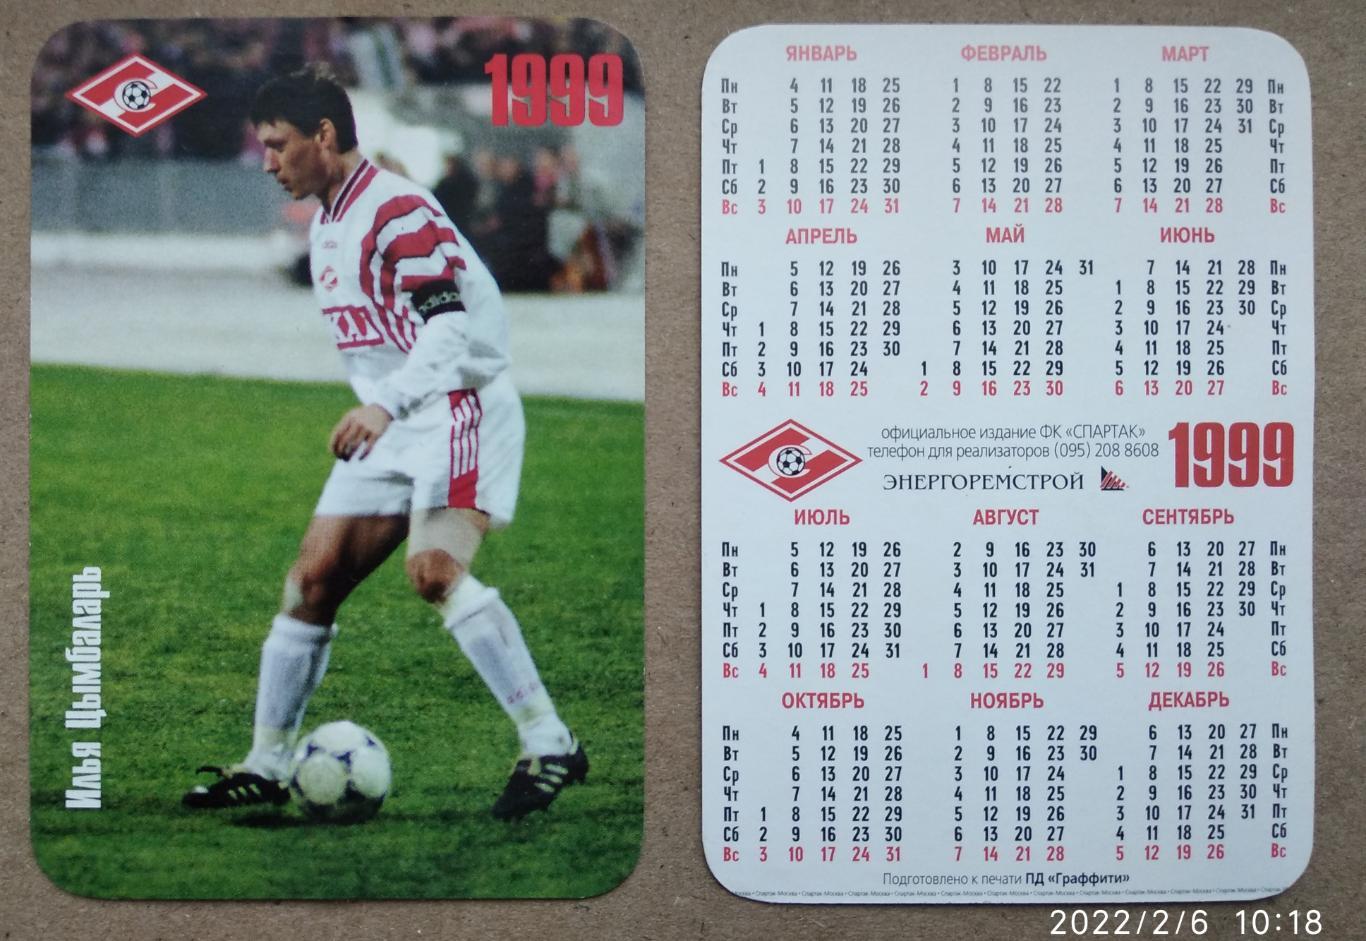 Спартак Москва - Цымбаларь , календарик на 1999 год, официальное издание клуба